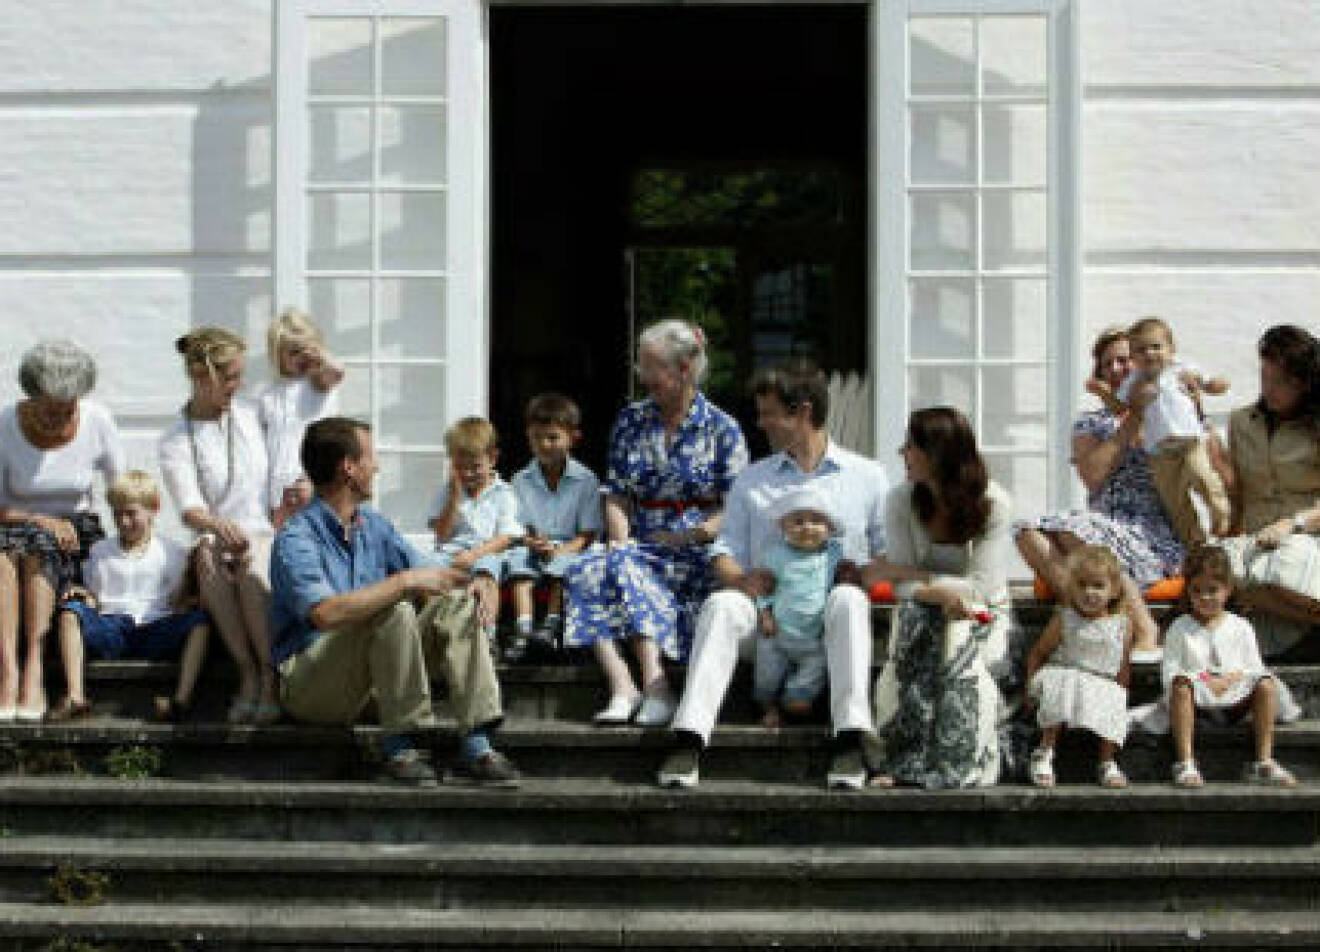 Systrarna tar med barn och barnbarn till Gråsten varje sommar - det är en familjesemester som både unga och gamla tycker om